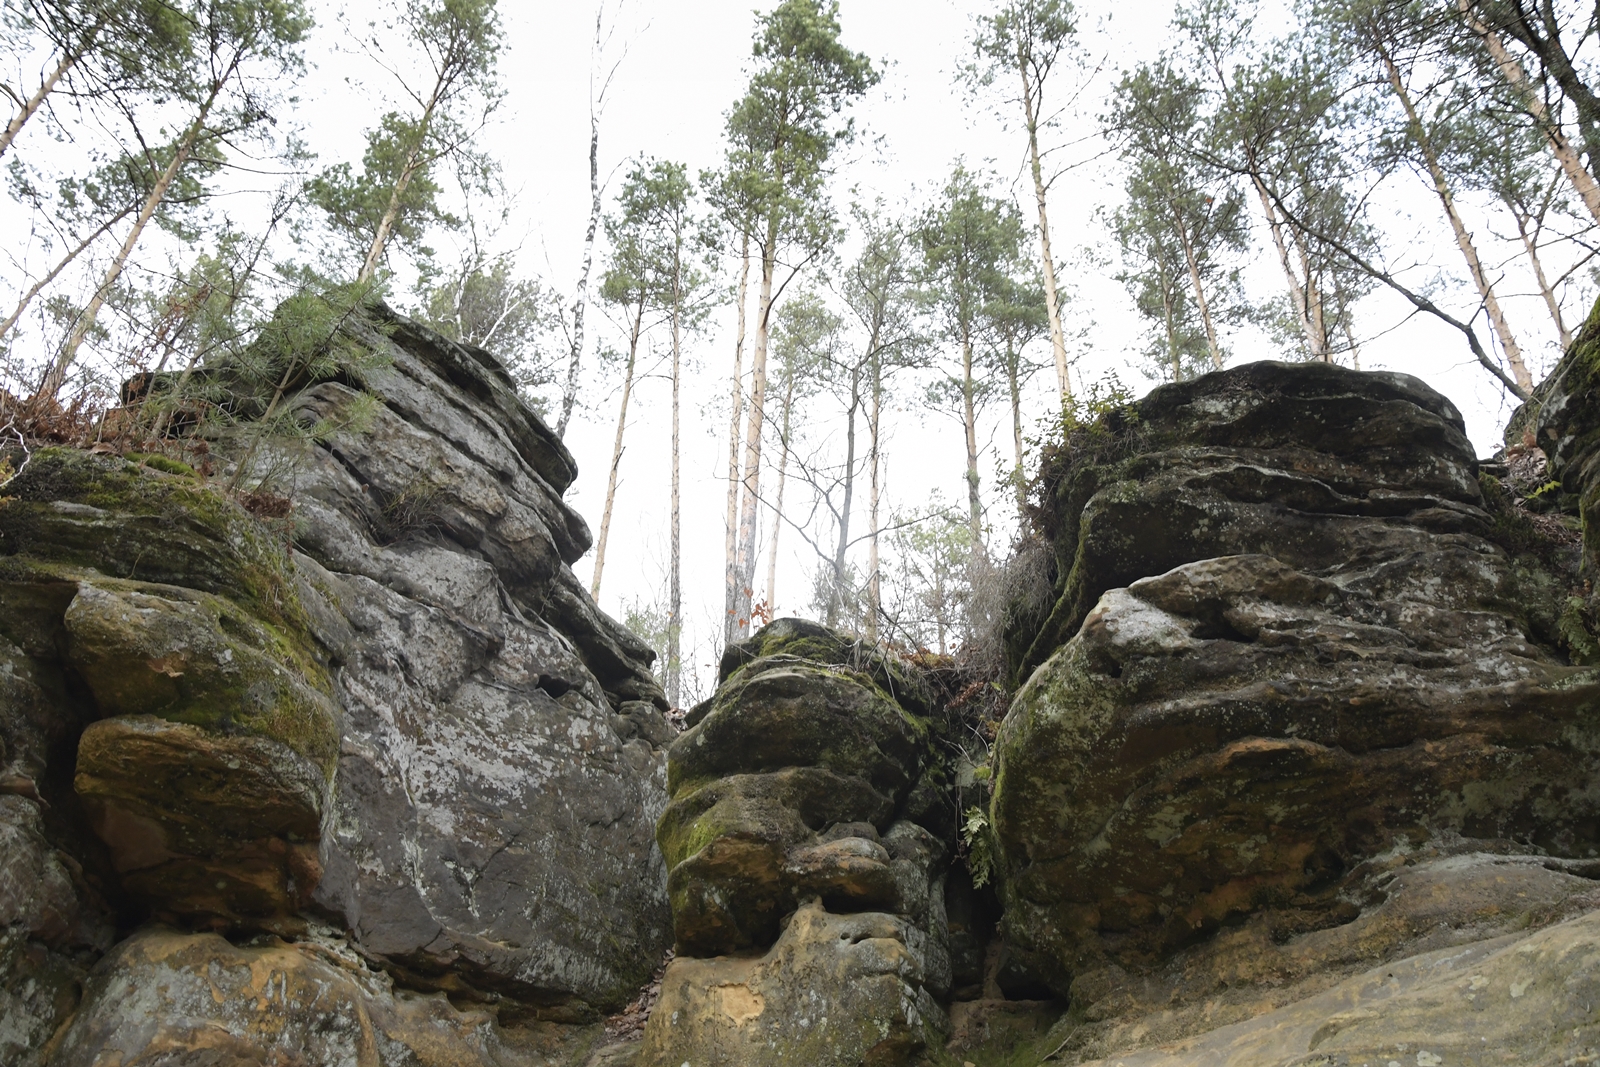 Majestatyczne skały w kształcie grzybów, widziane od dołu, nad nimi strzeliste sosny.